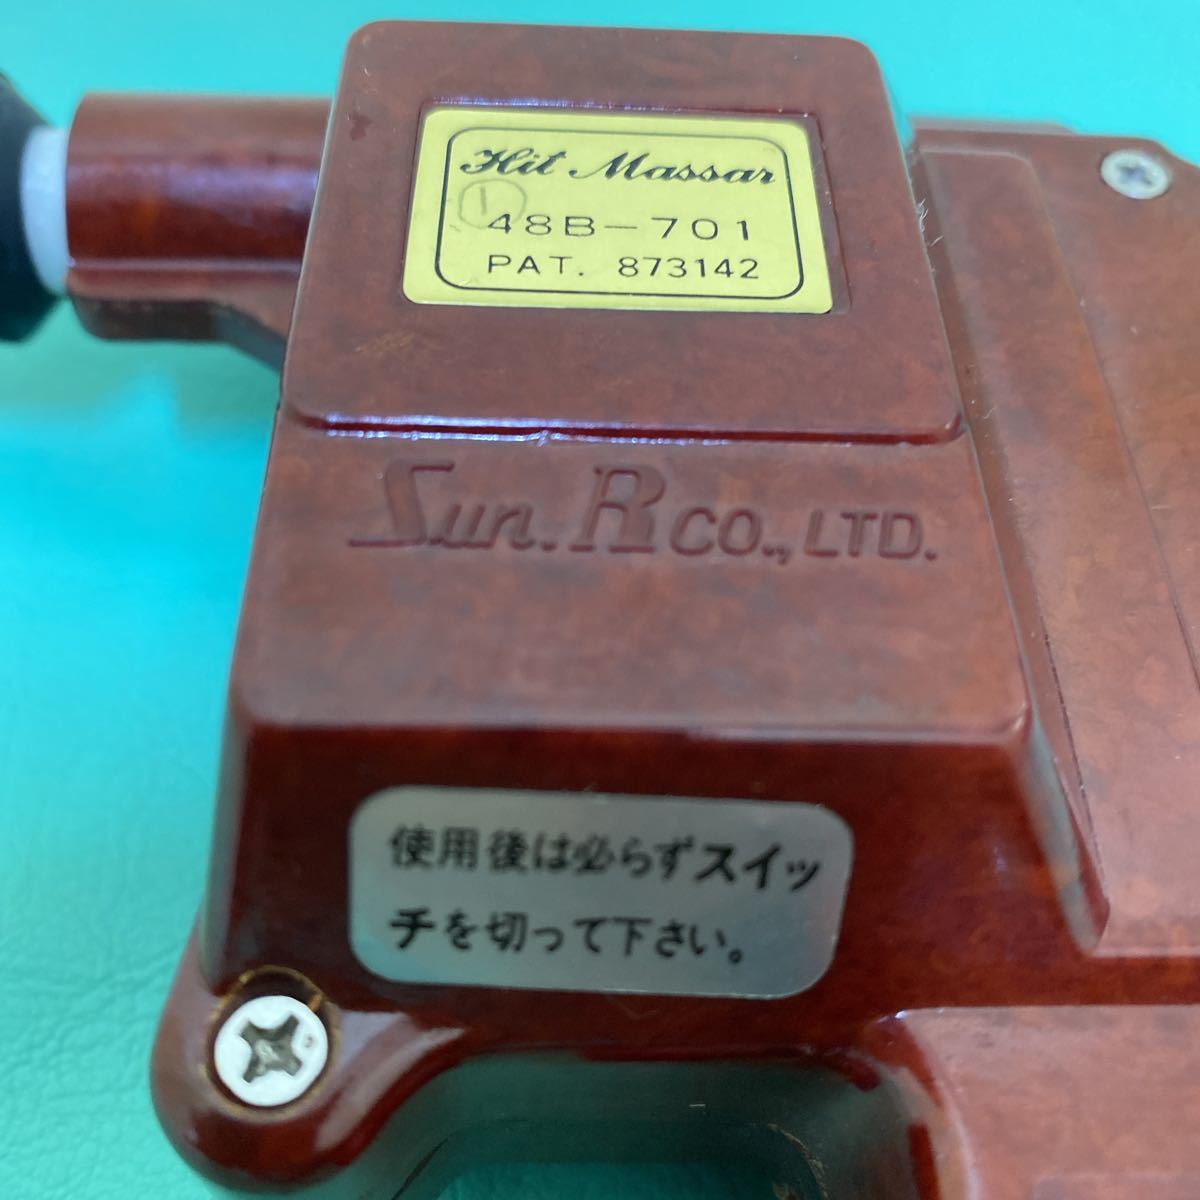 16238円 【公式ショップ】 ヒットマッサー 標準タイプ マッサージ